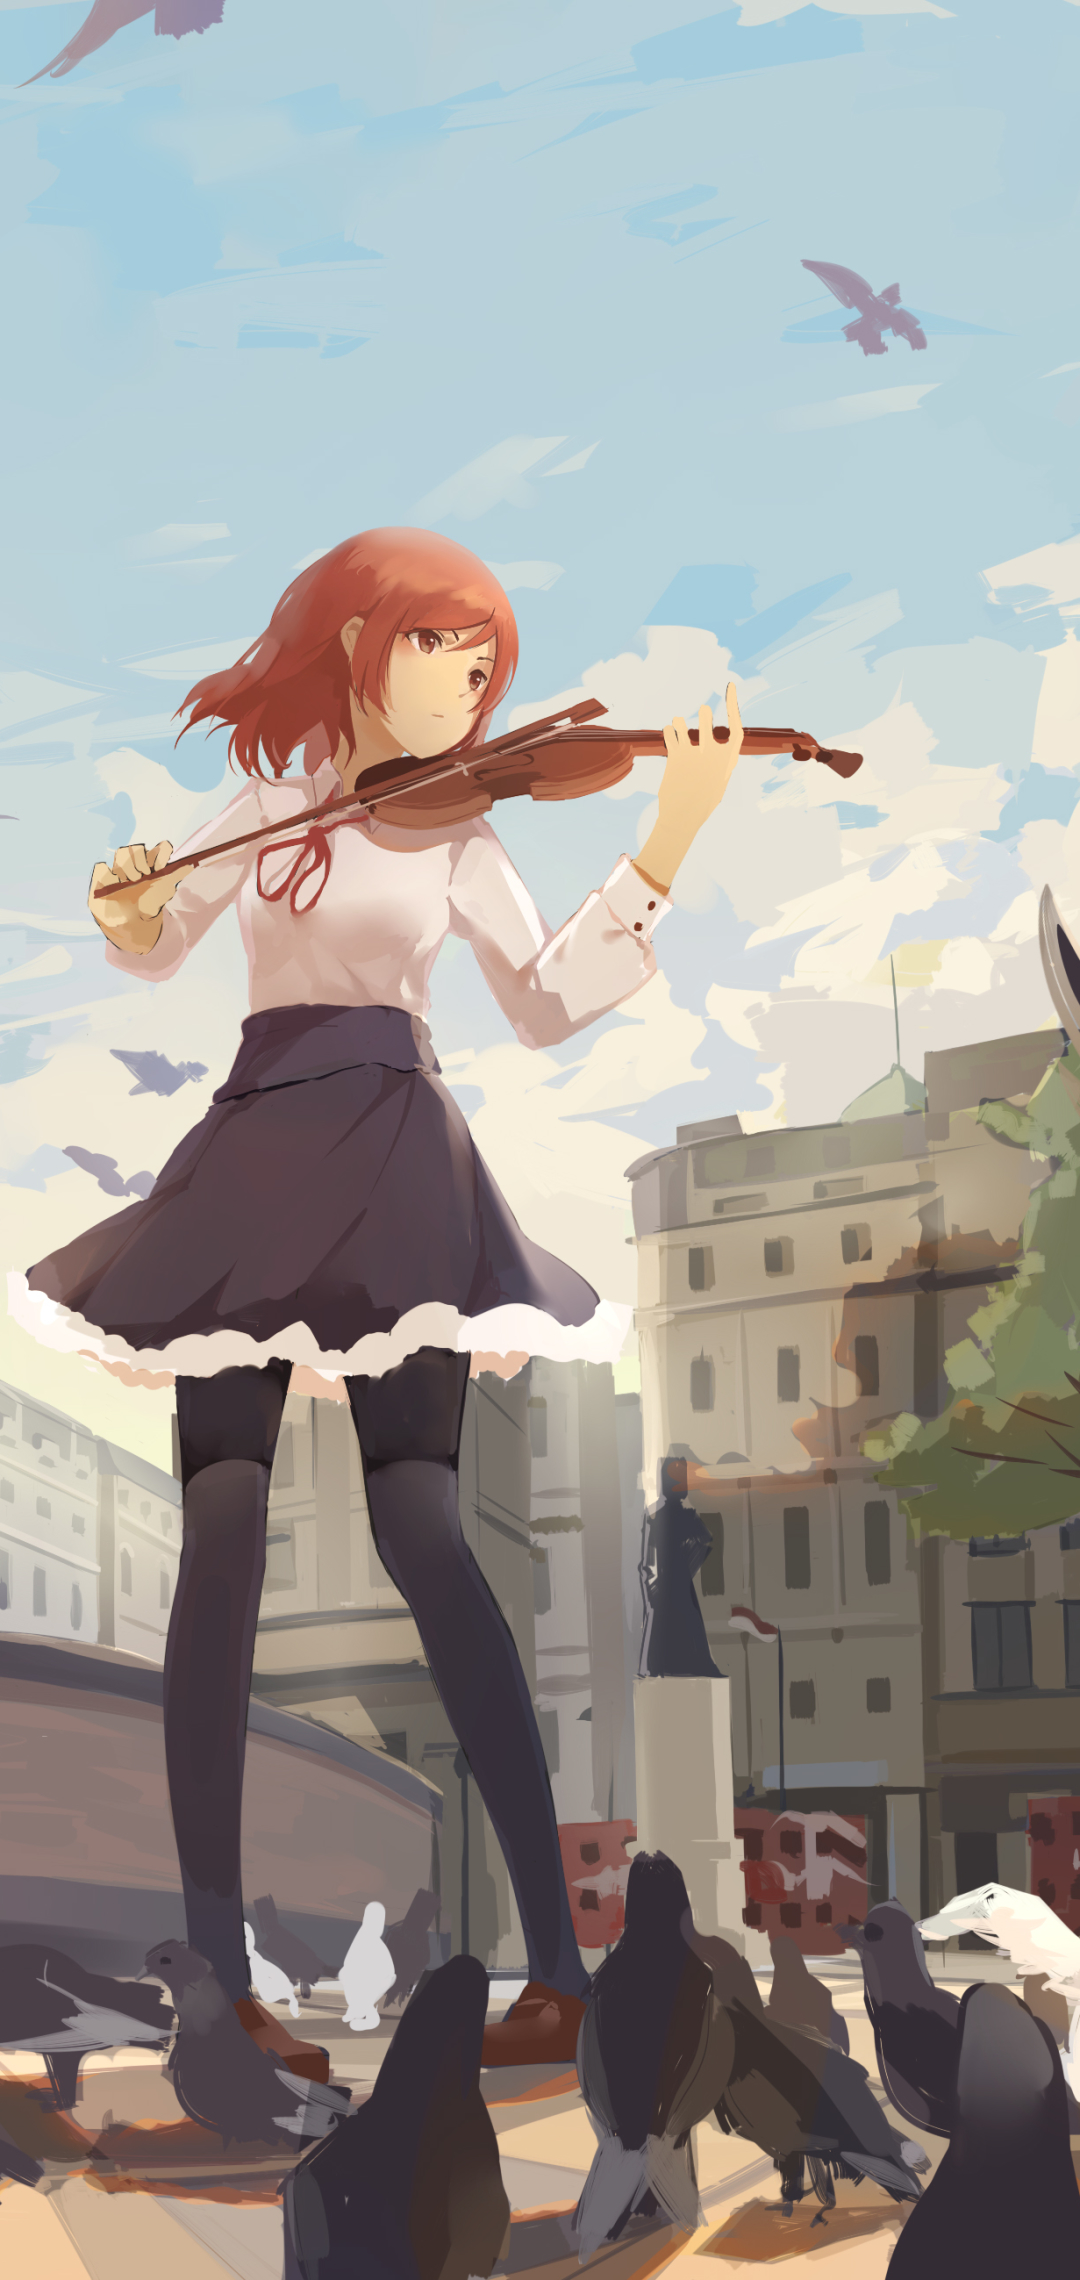 Descarga gratuita de fondo de pantalla para móvil de Paloma, Animado, Maki Nishikino, ¡ama Vive!, Violinista.